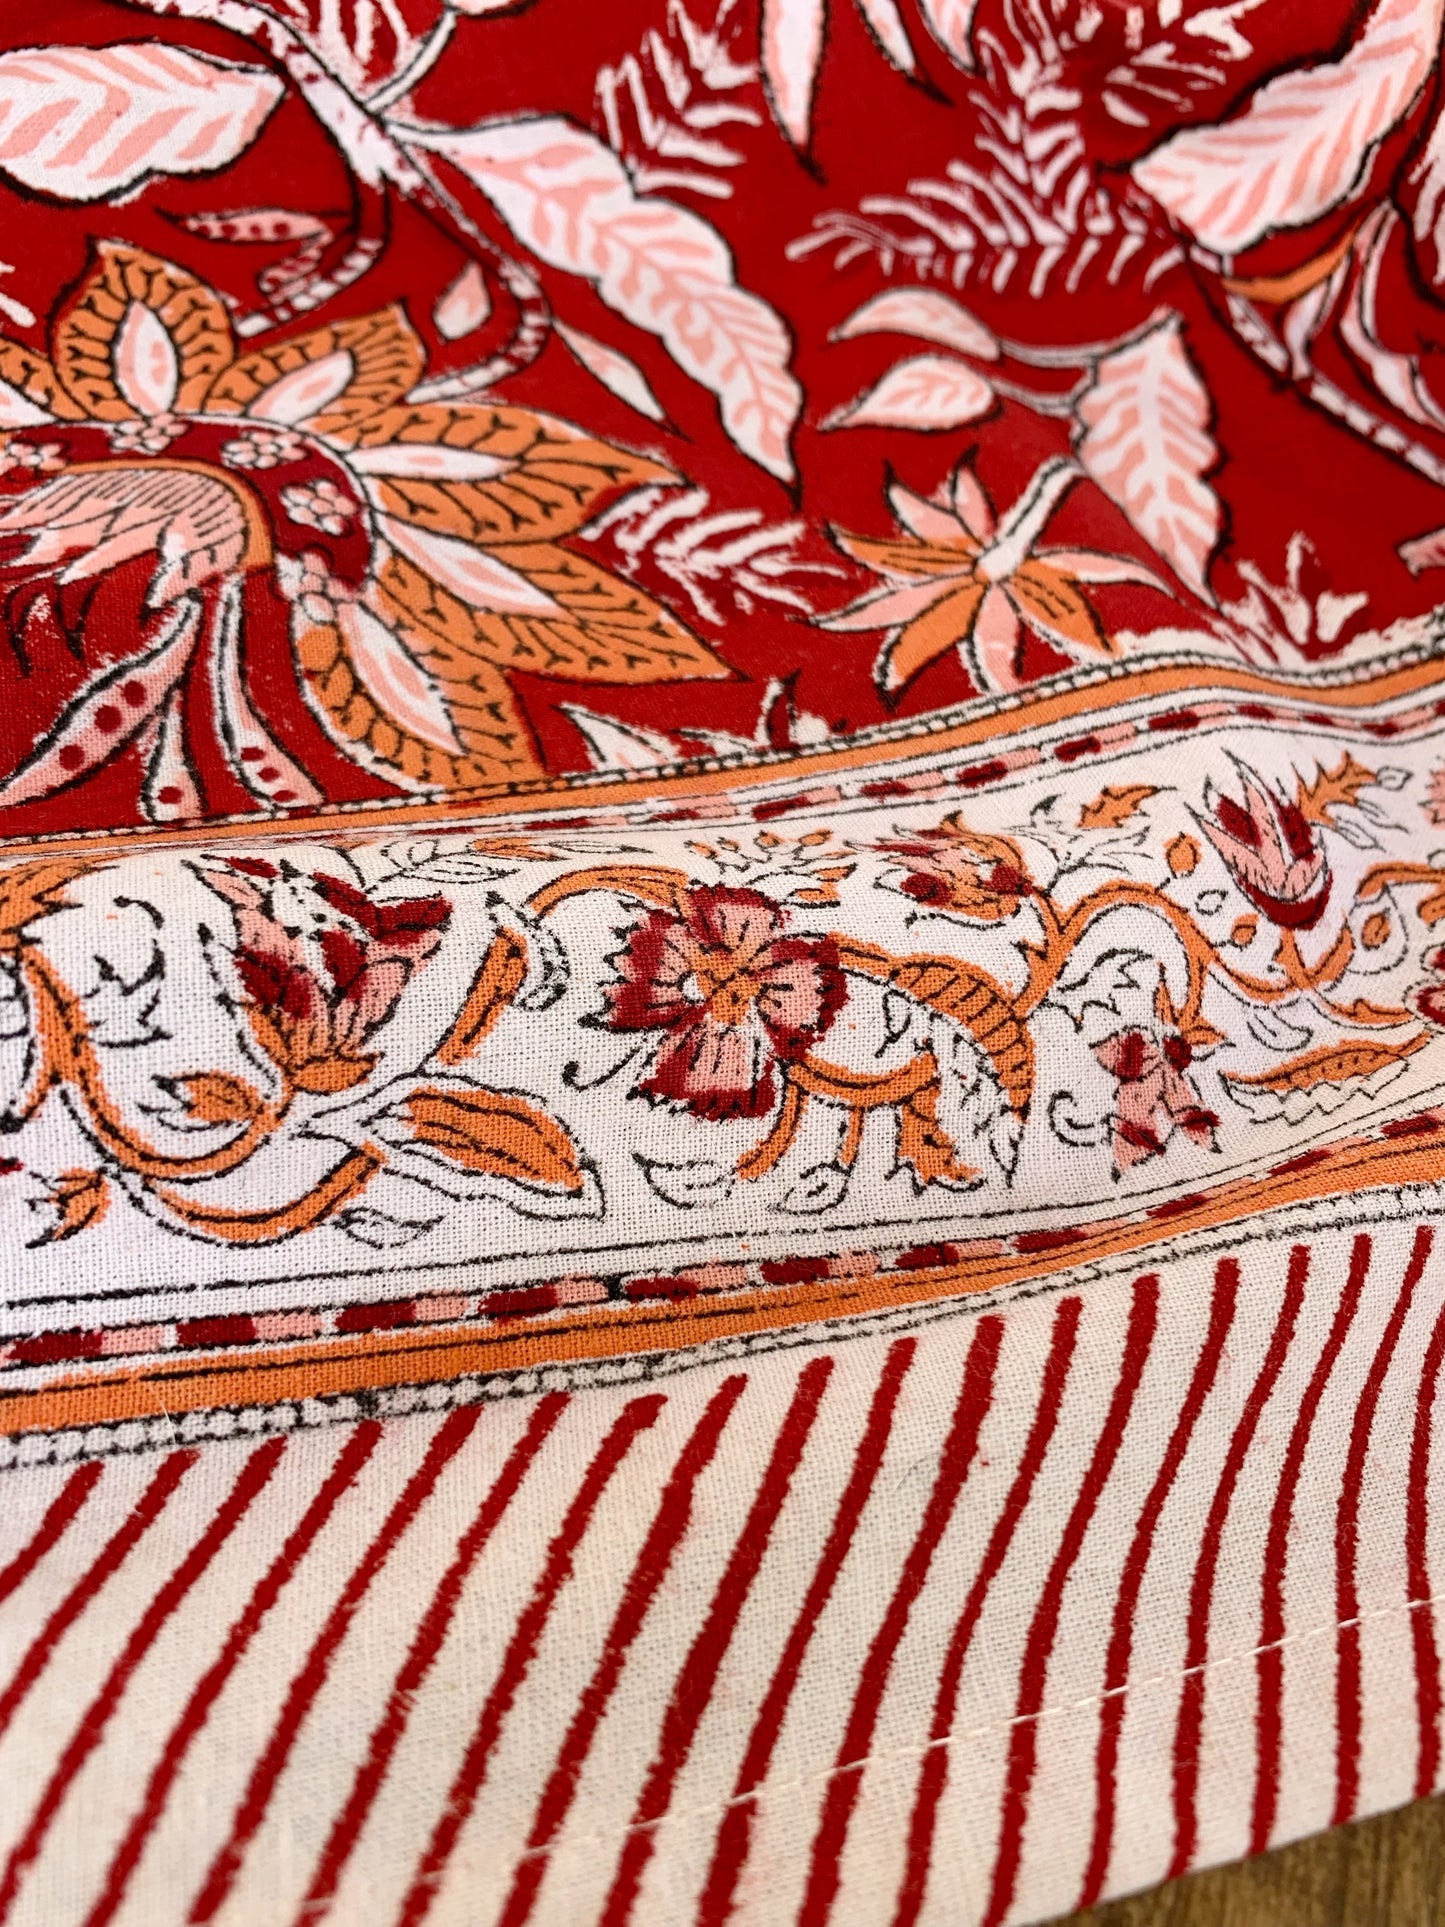 Mantel algodón puro estampado block print artesanal en India · Varias medidas a elegir · Mantel boho chic 100% algodón hindú · Rojo y naranja